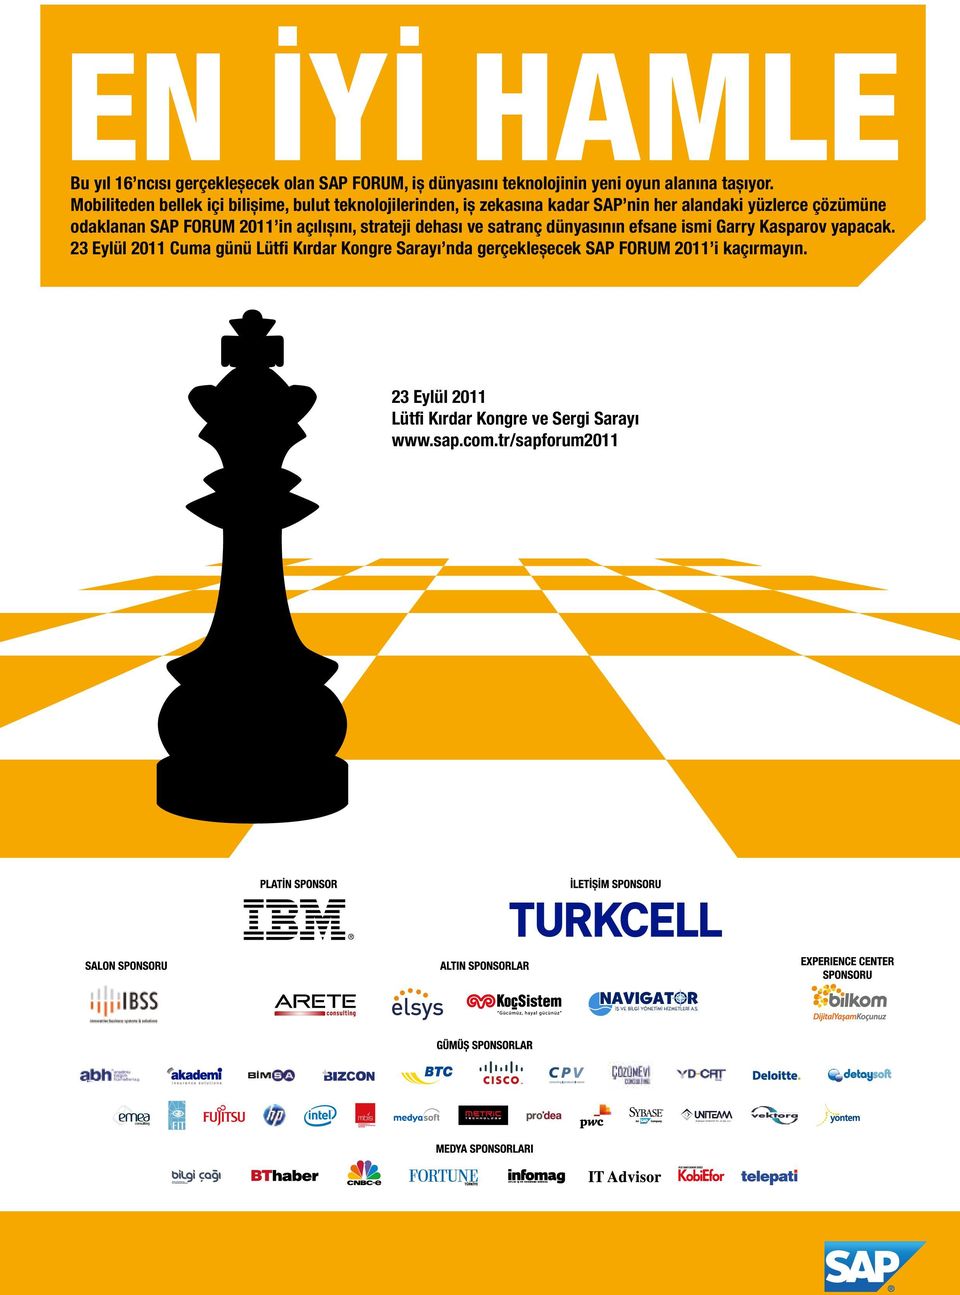 FORUM 2011 in açılıșını, strateji dehası ve satranç dünyasının efsane ismi Garry Kasparov yapacak.